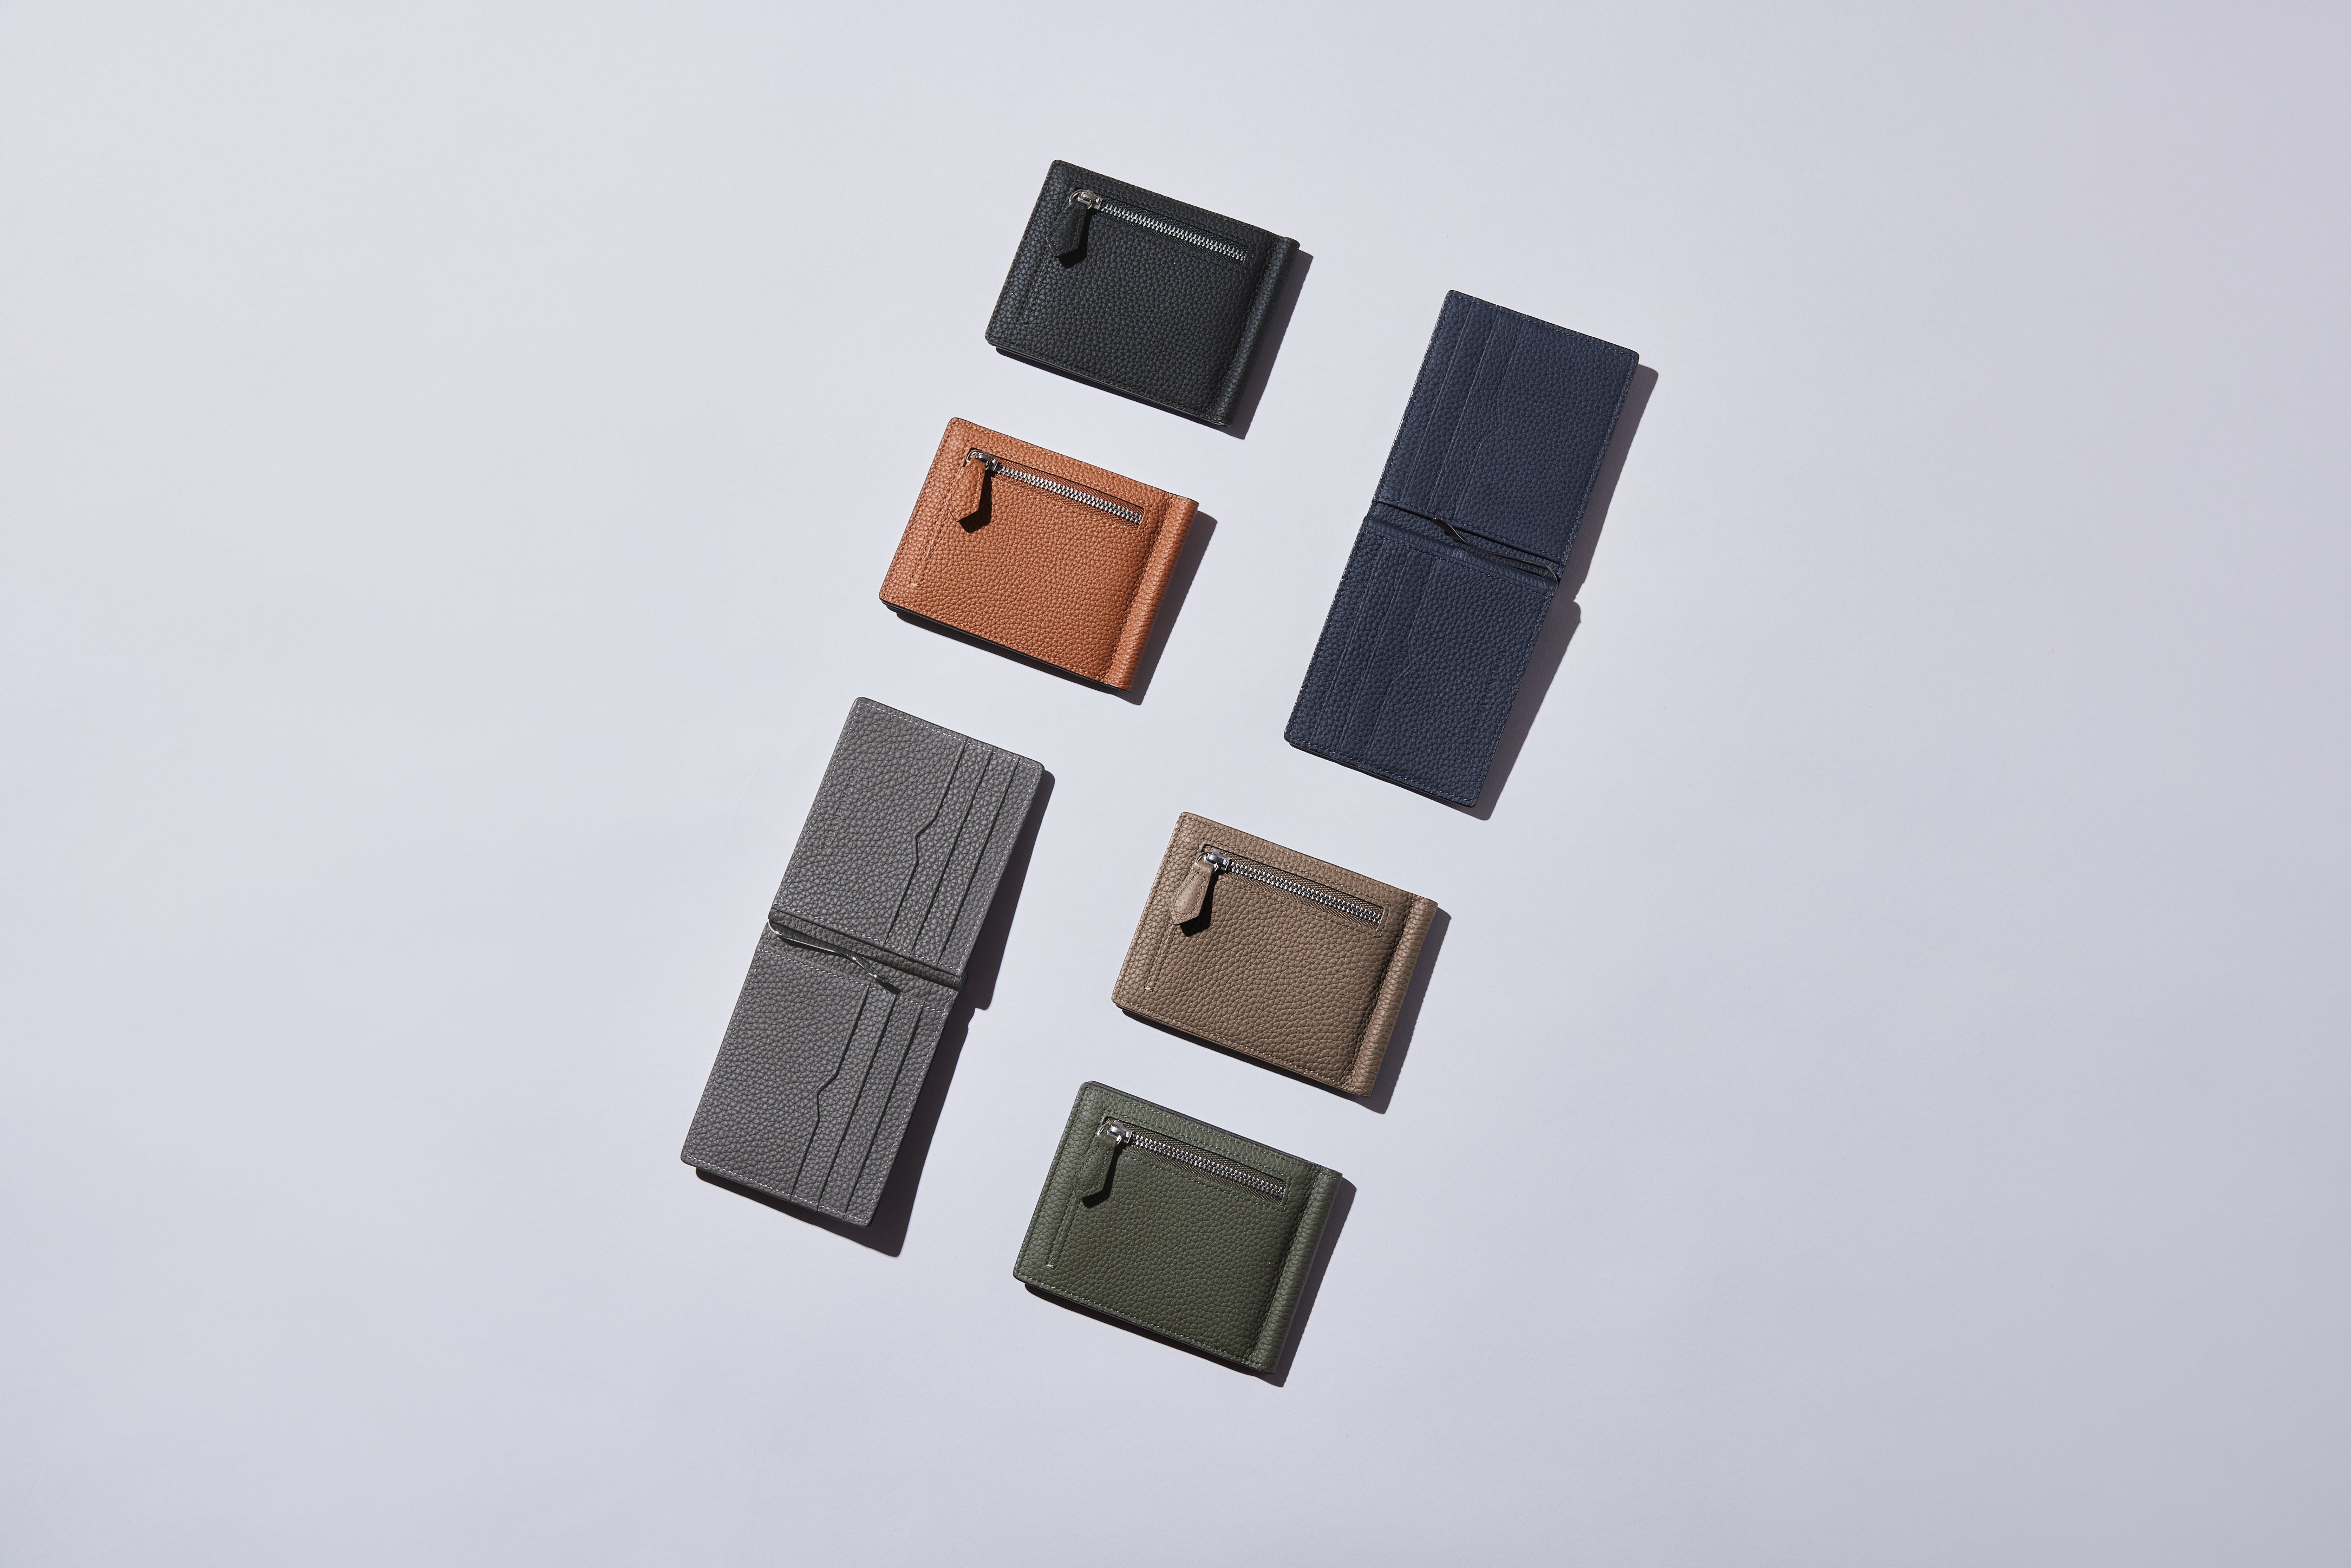 Širok izbor moških usnjenih denarnic v različnih barvah.